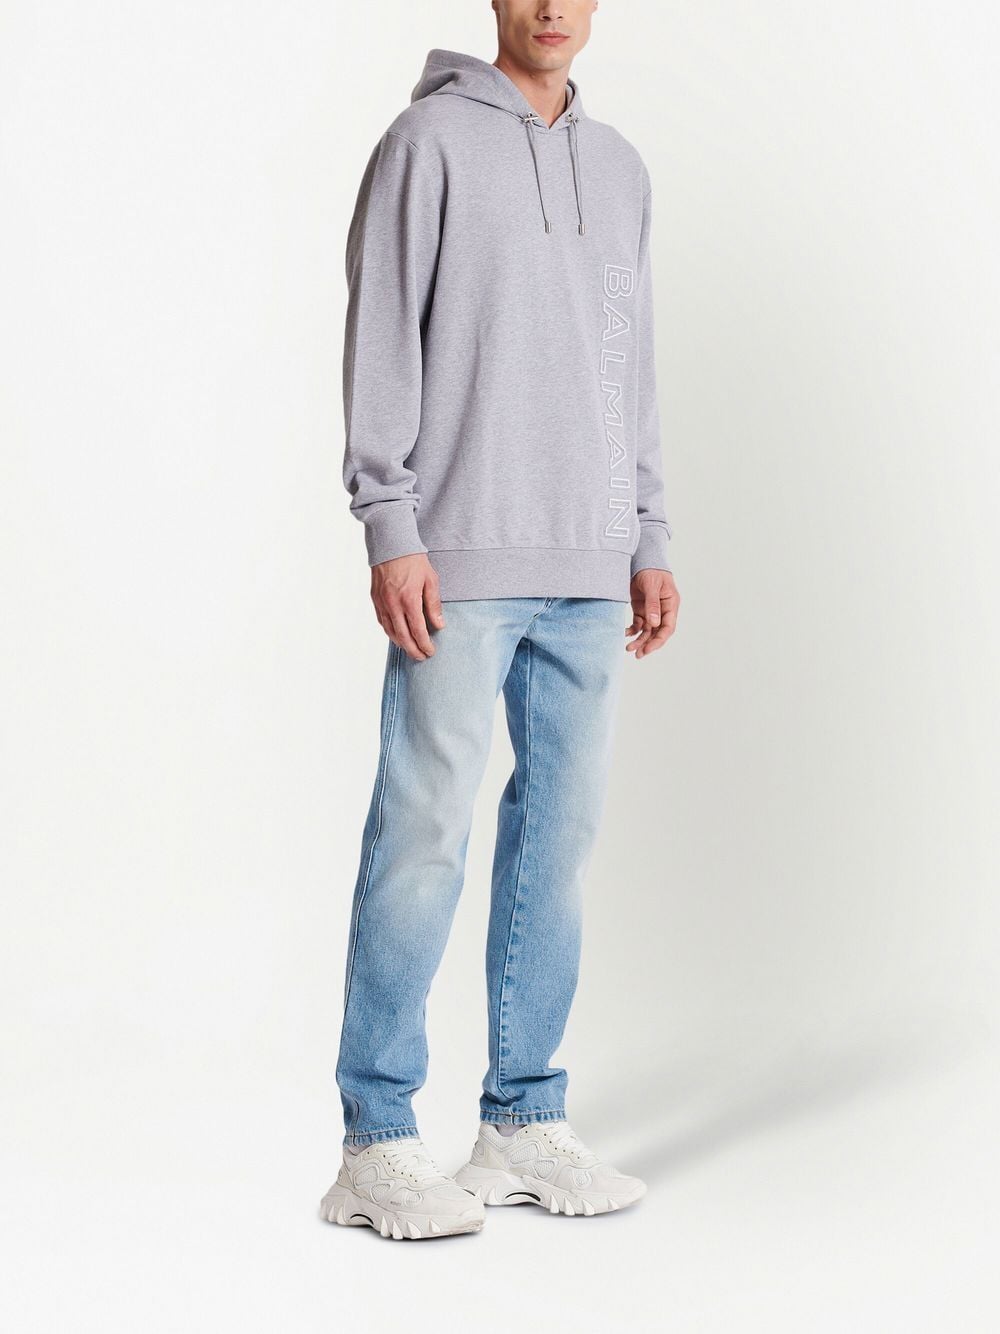 BalmainReflective sweatshirt at Fashion Clinic